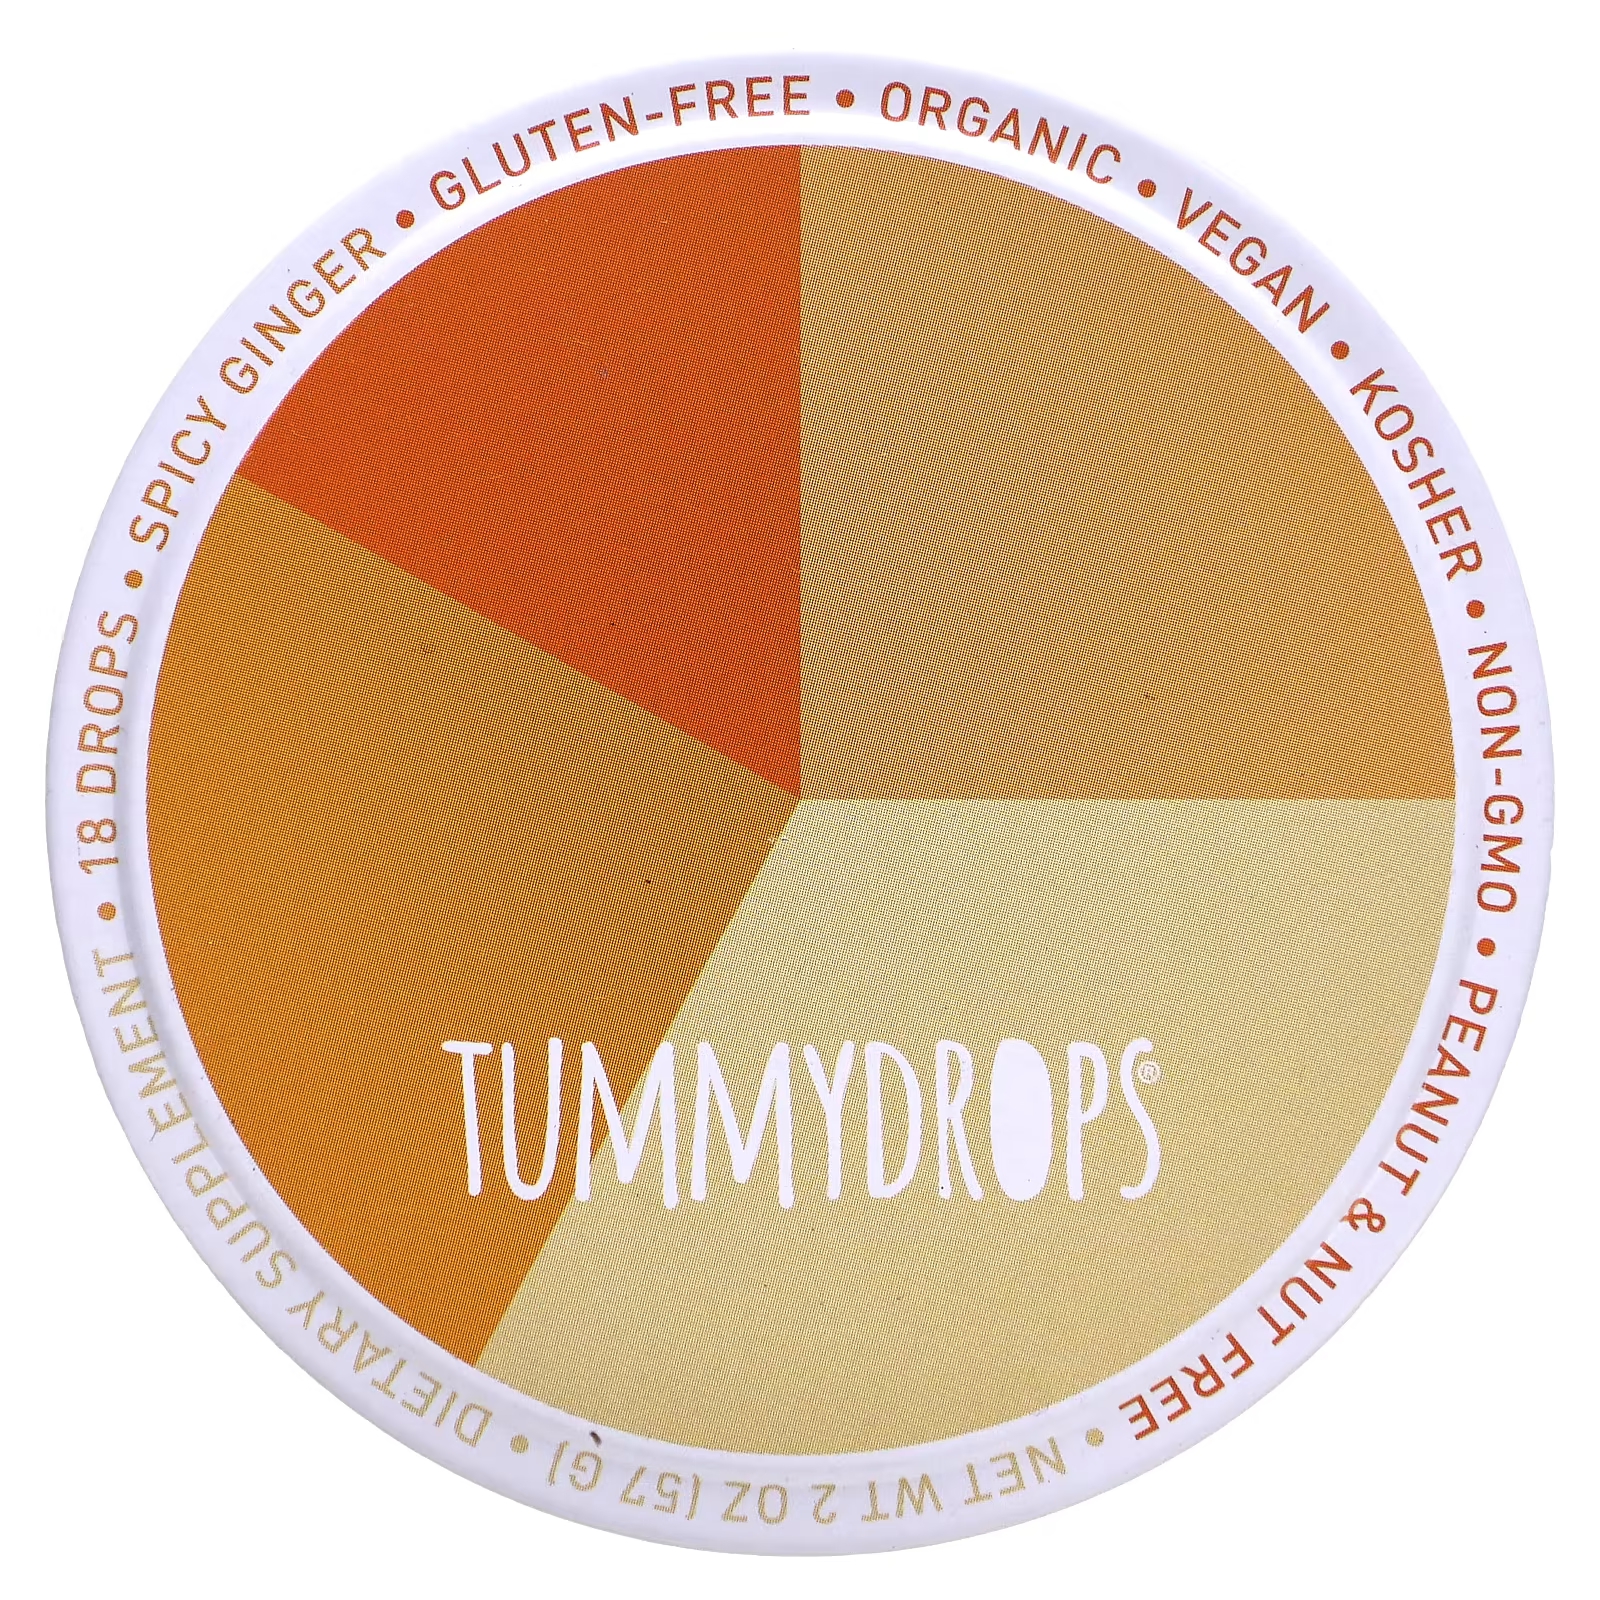 Пряный имбирь Tummydrops, 18 капель tummydrops органическая зимняя сахарная слива и имбирь 18 капель 57 г 2 унции